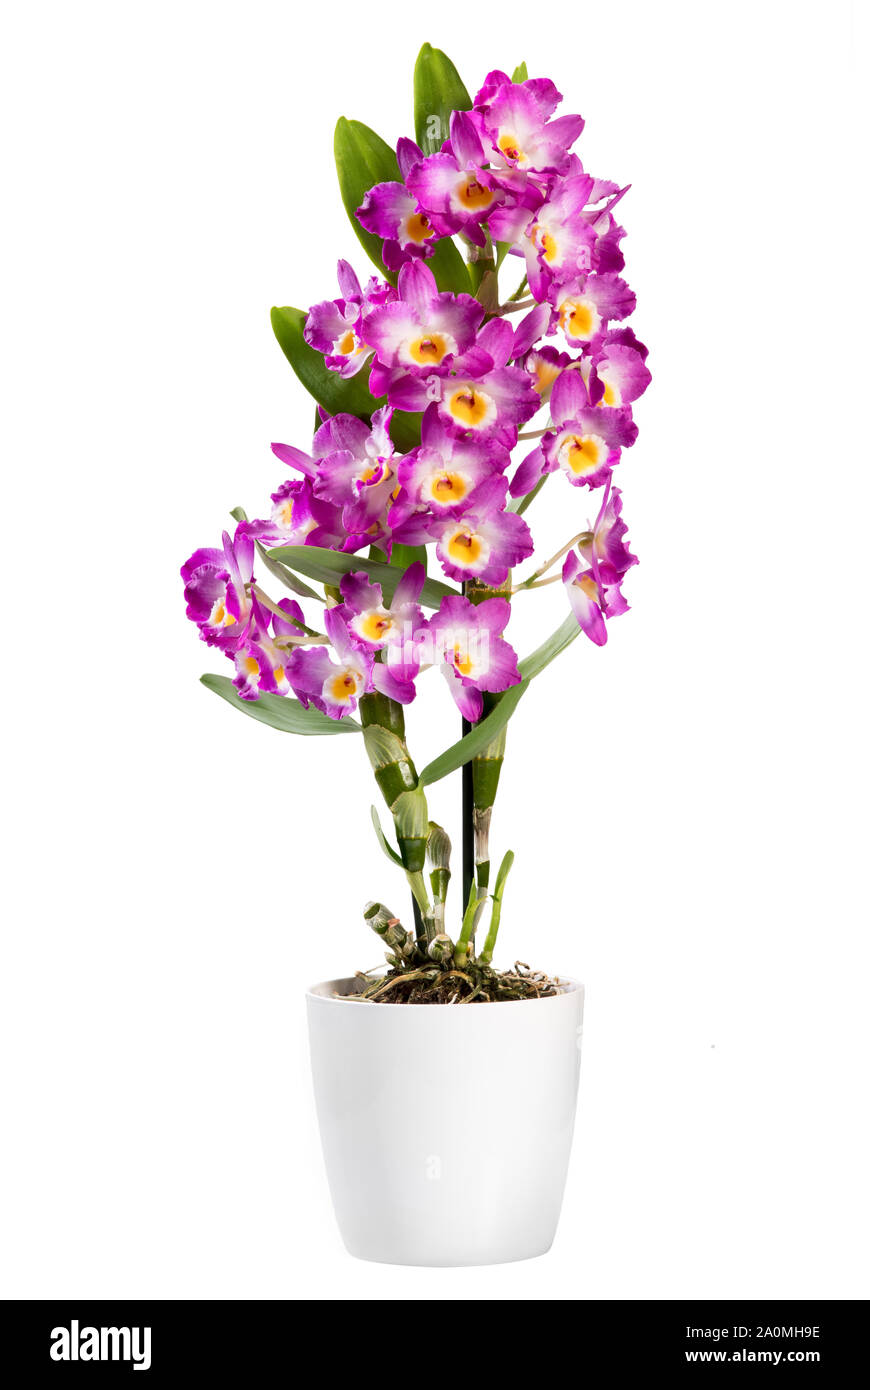 Topfpflanzen Dendrobium Pflanze isoliert auf Weiss, eine epiphytisch Orchidee mit Sprays von bunten hell-rosa Blüten und beliebte Zimmerpflanze Stockfoto